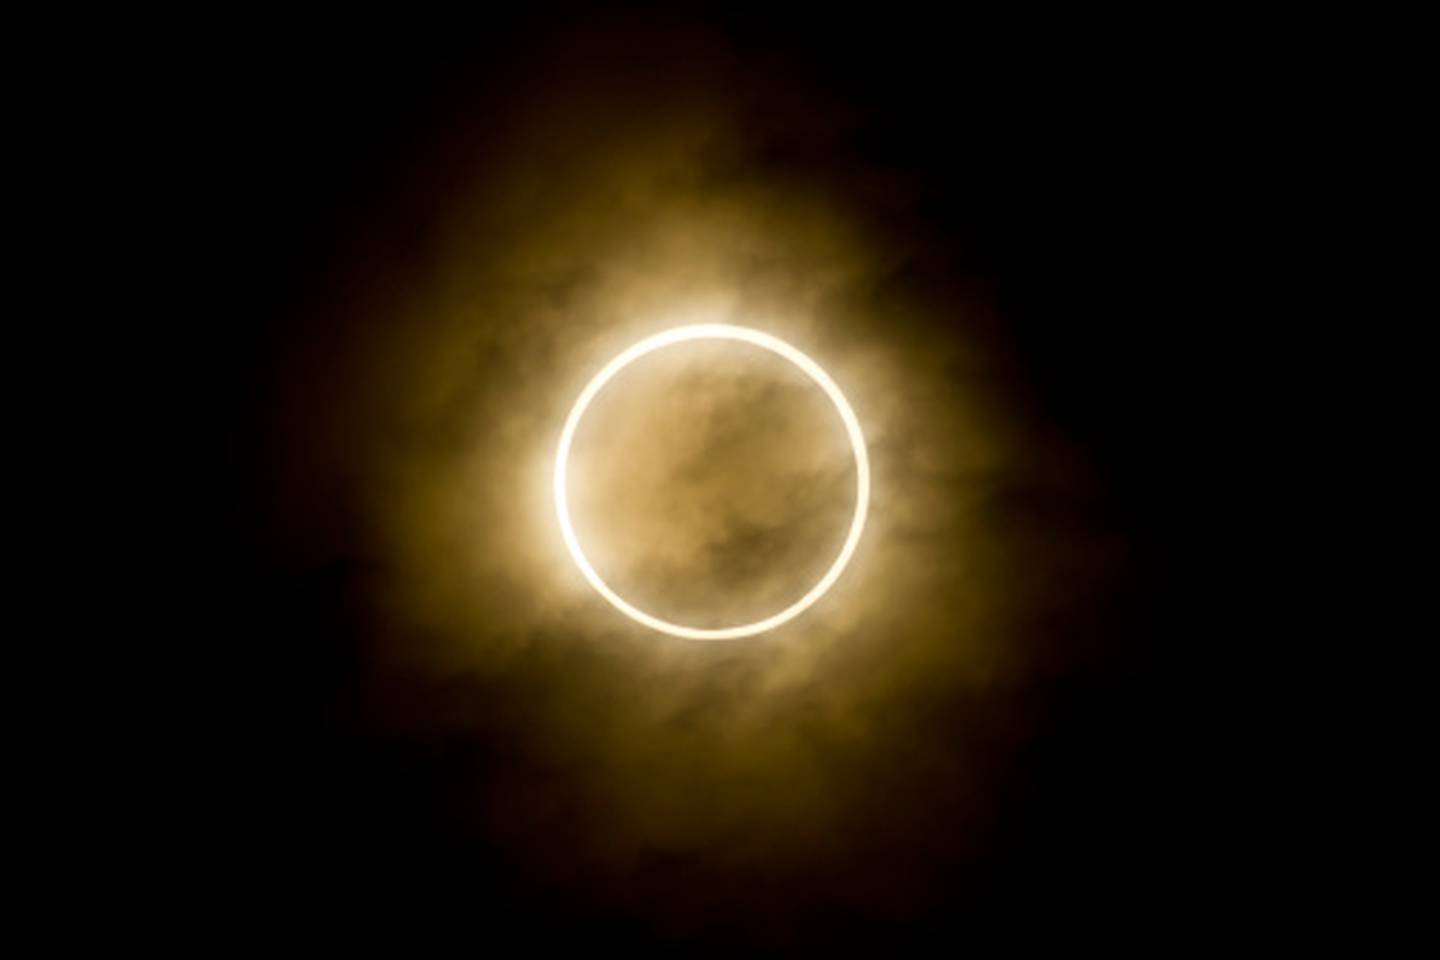 Eclipse solar en Ecuador, así lo puedes observar desde la comodidad de